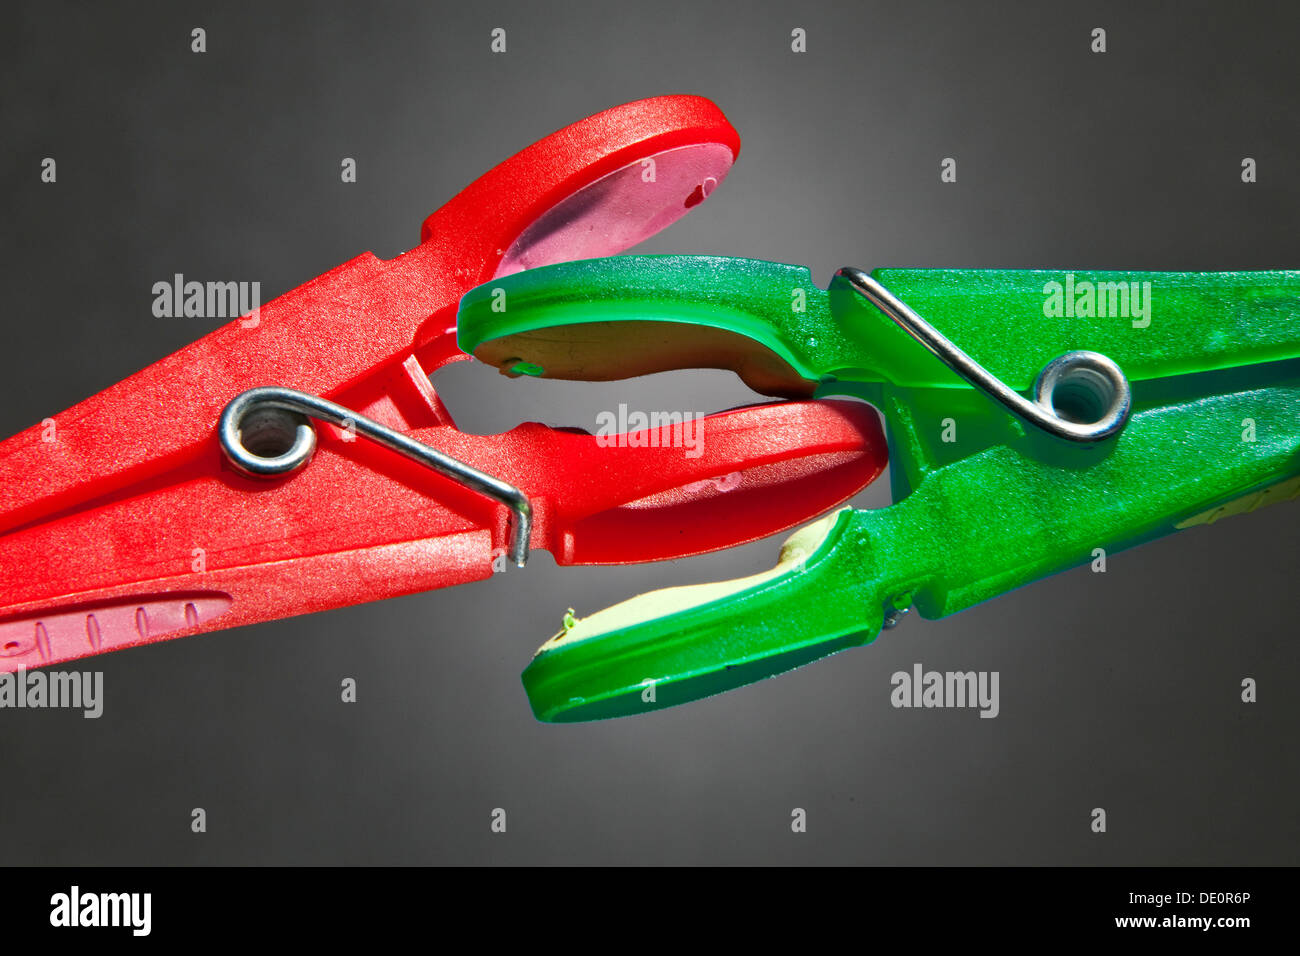 Una pinza roja y verde-peg ropa luchan el uno con el otro, imagen simbólica de las luchas por el poder político Foto de stock